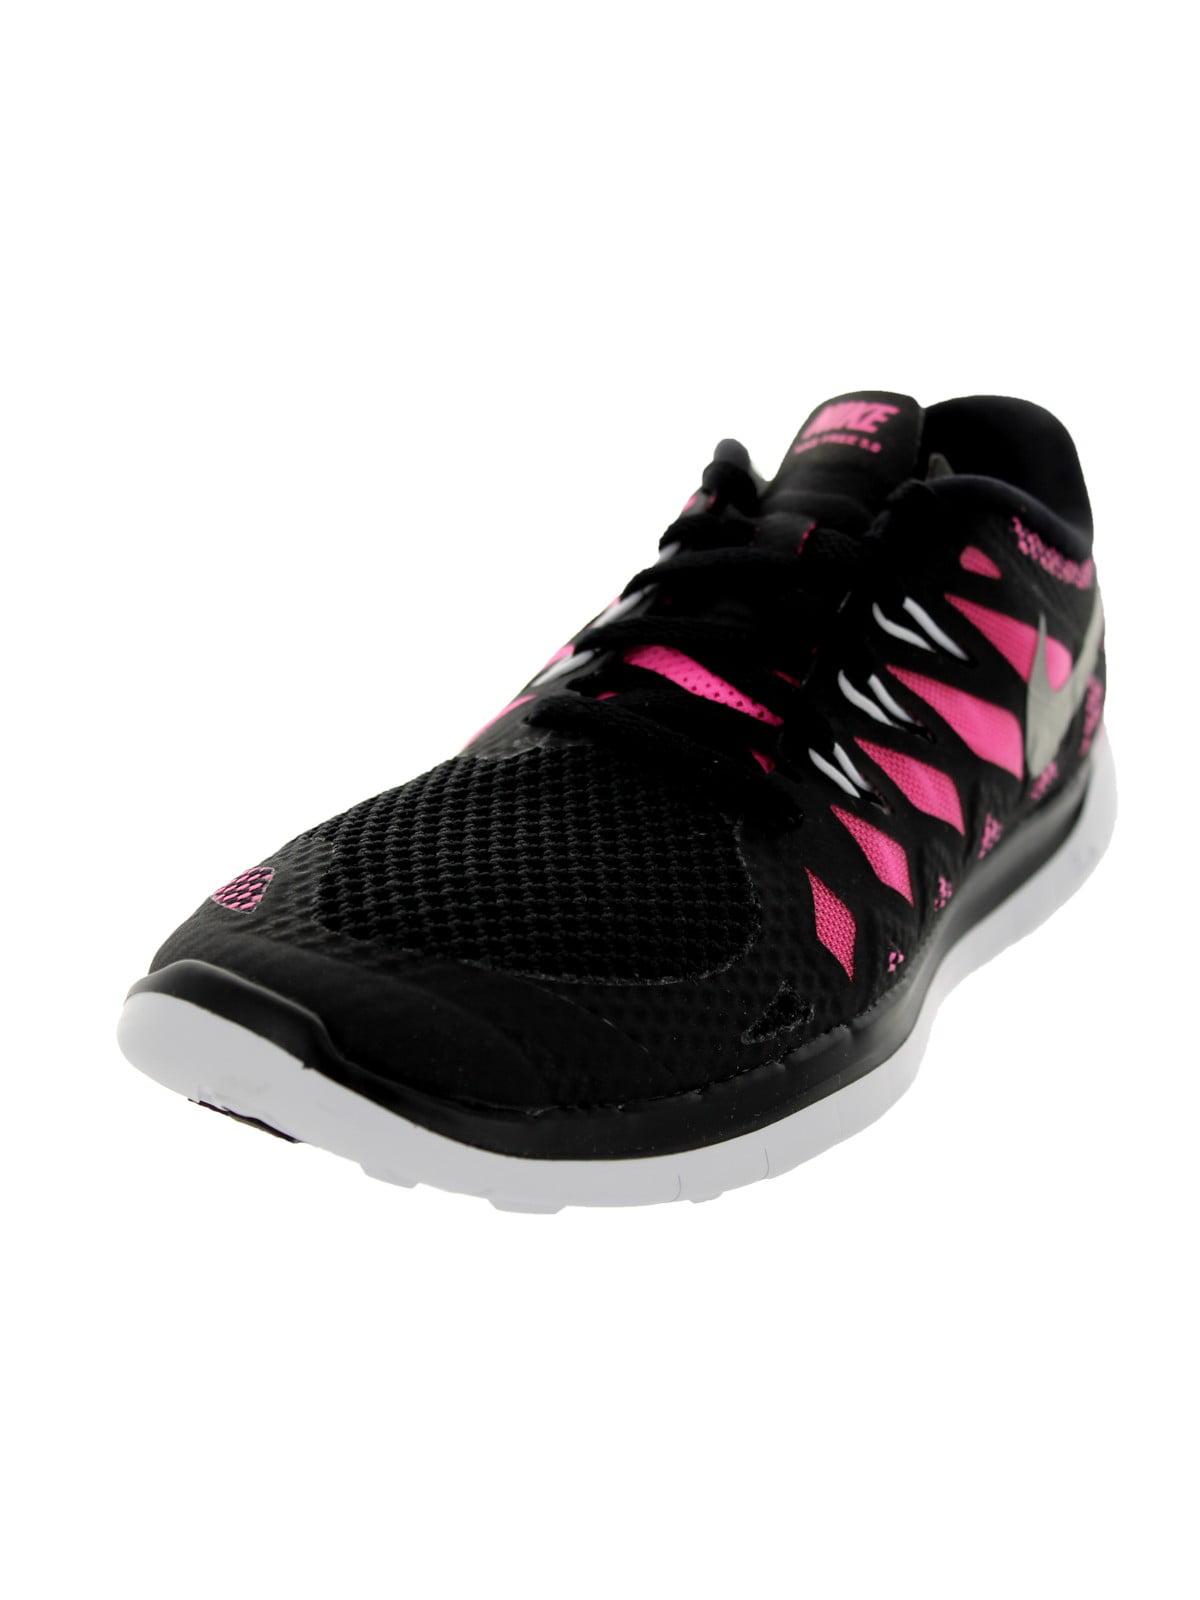 Nike (GS) Girls' Running Shoes Size 6 - Walmart.com